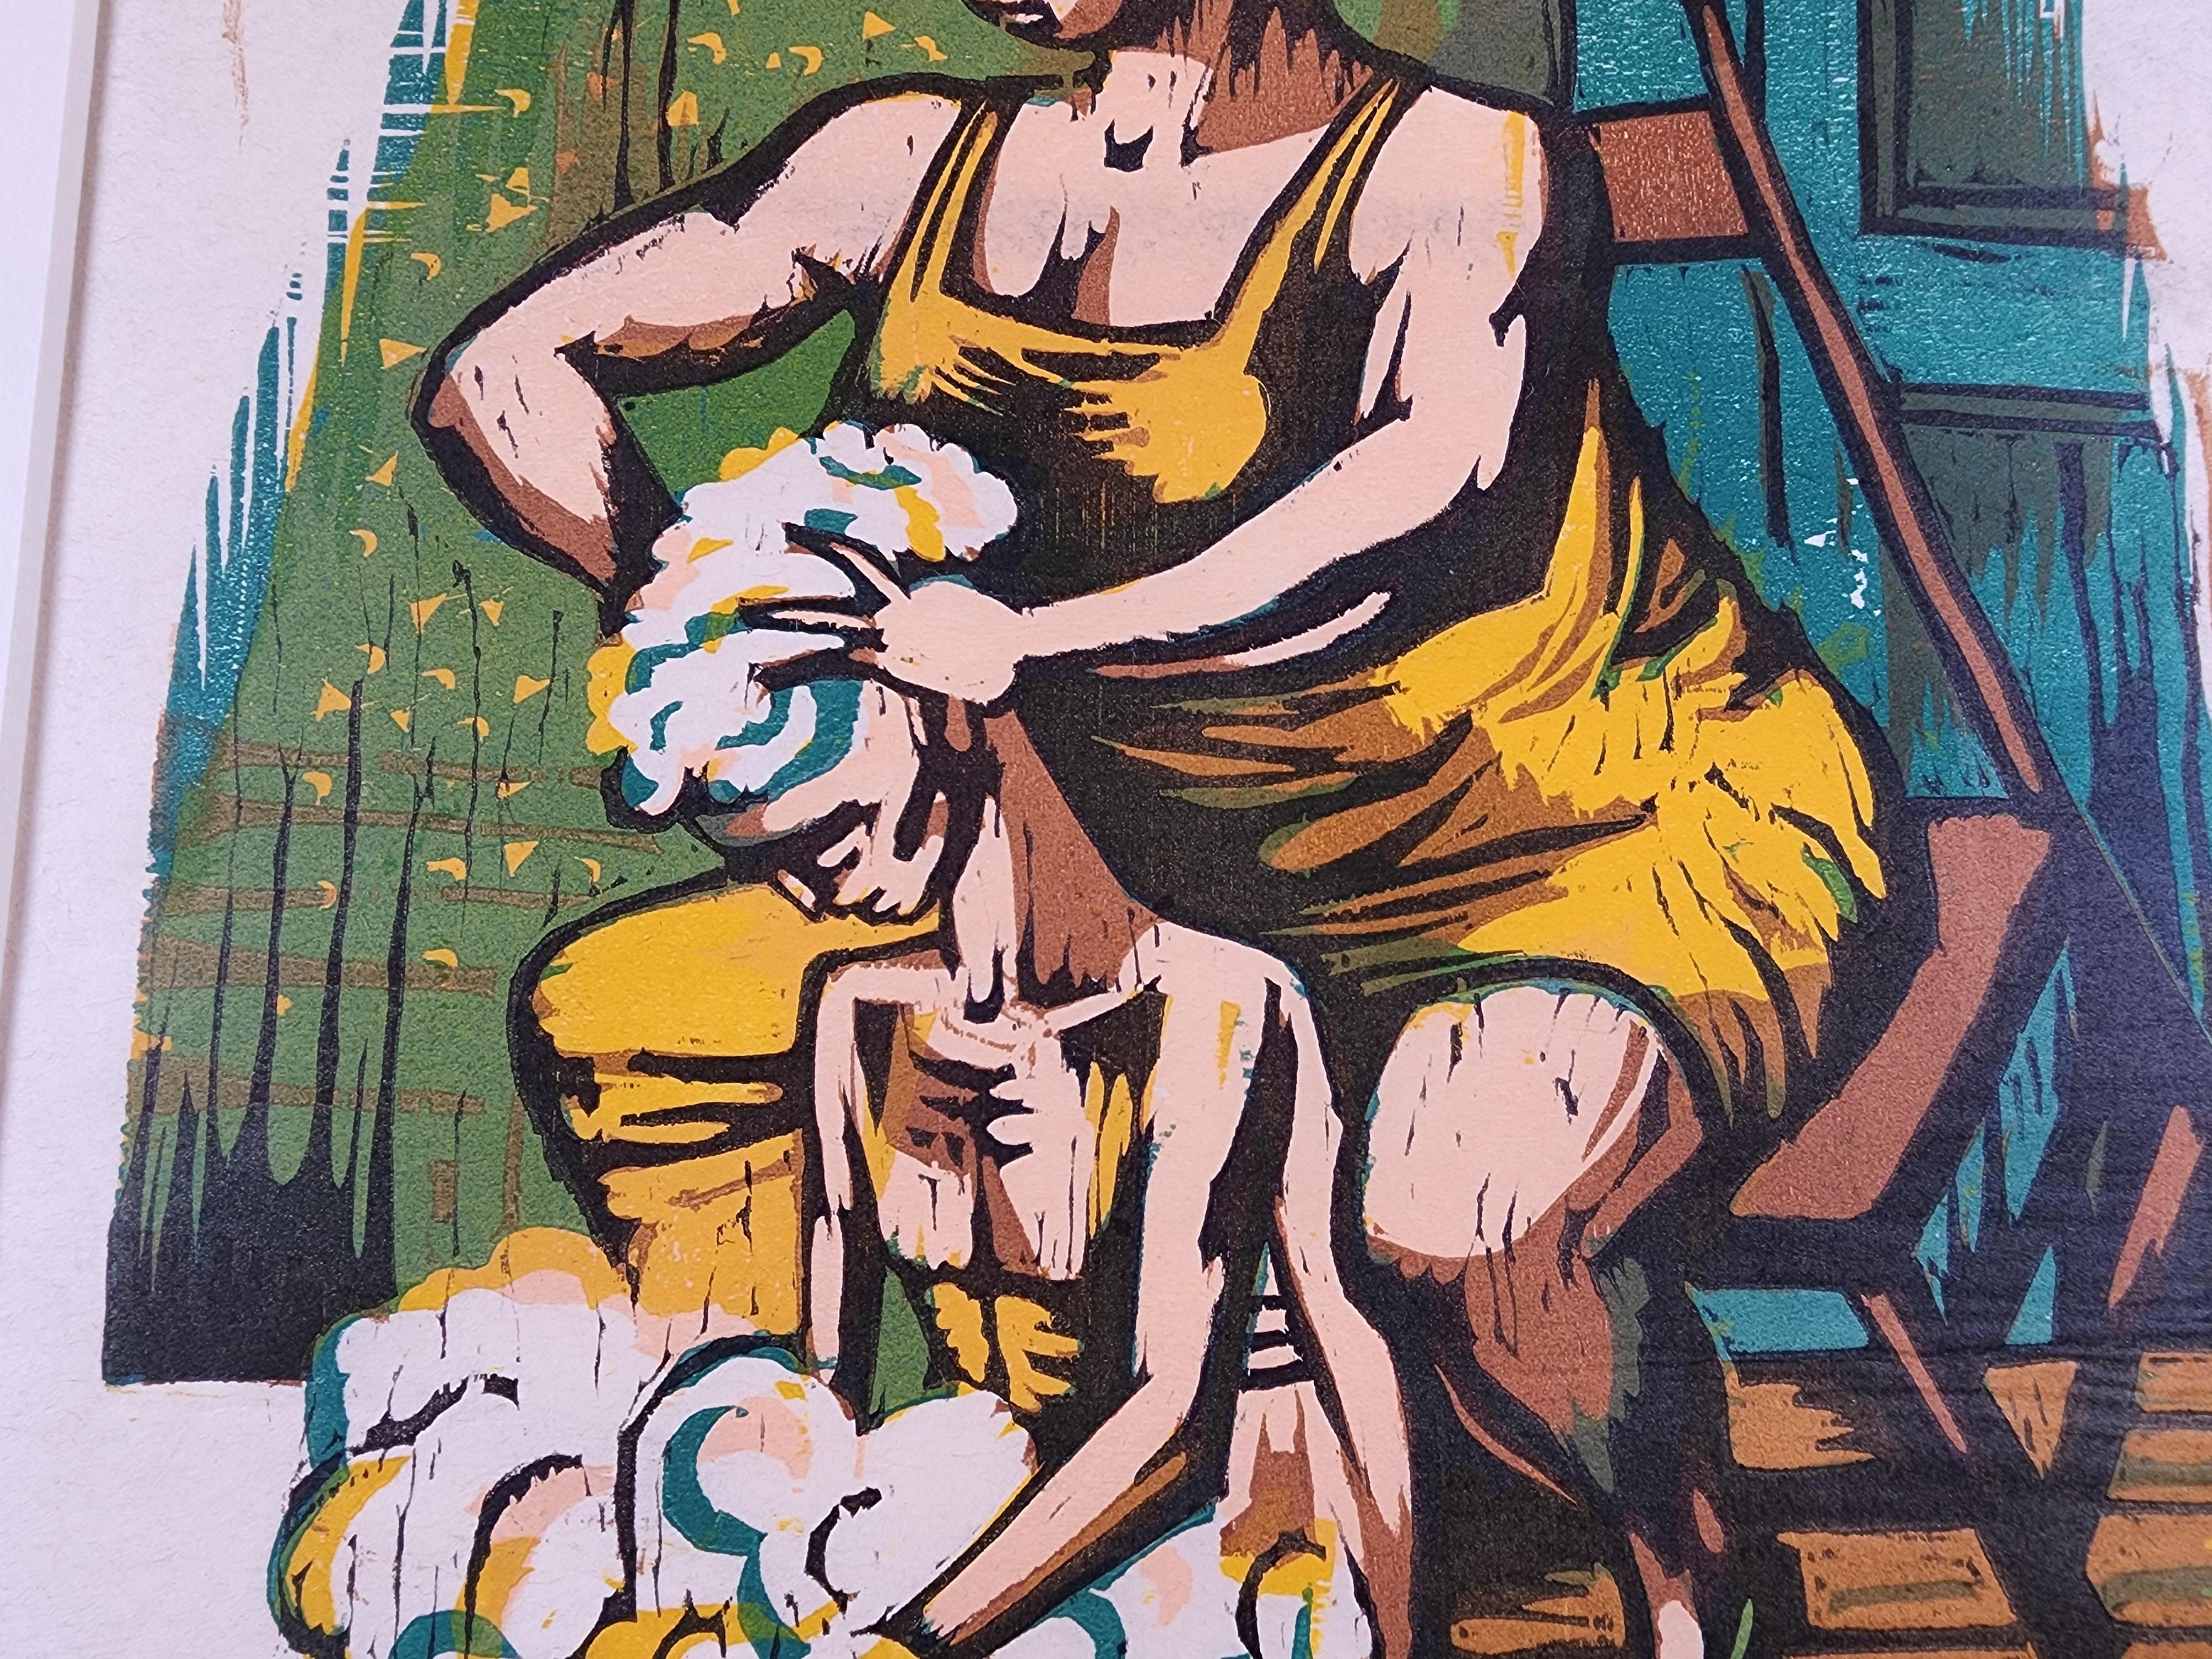 Shampoo (Amerikanischer Realismus), Print, von Paul Weller